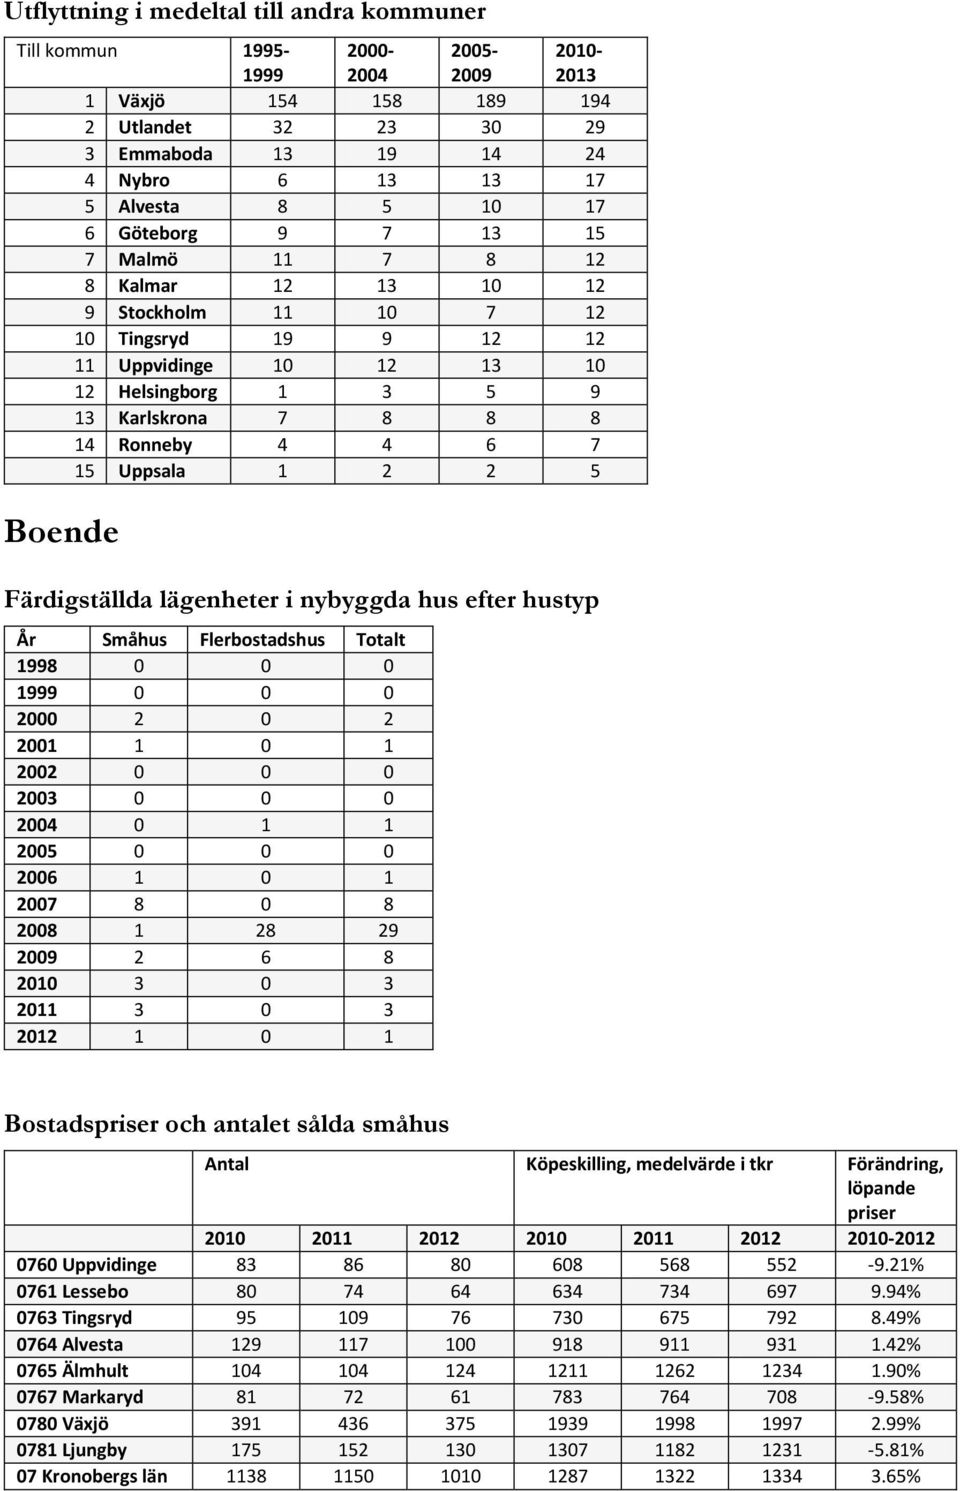 7 15 Uppsala 1 2 2 5 Boende Färdigställda lägenheter i nybyggda hus efter hustyp År Småhus Flerbostadshus Totalt 1998 0 0 0 1999 0 0 0 2000 2 0 2 2001 1 0 1 2002 0 0 0 2003 0 0 0 2004 0 1 1 2005 0 0